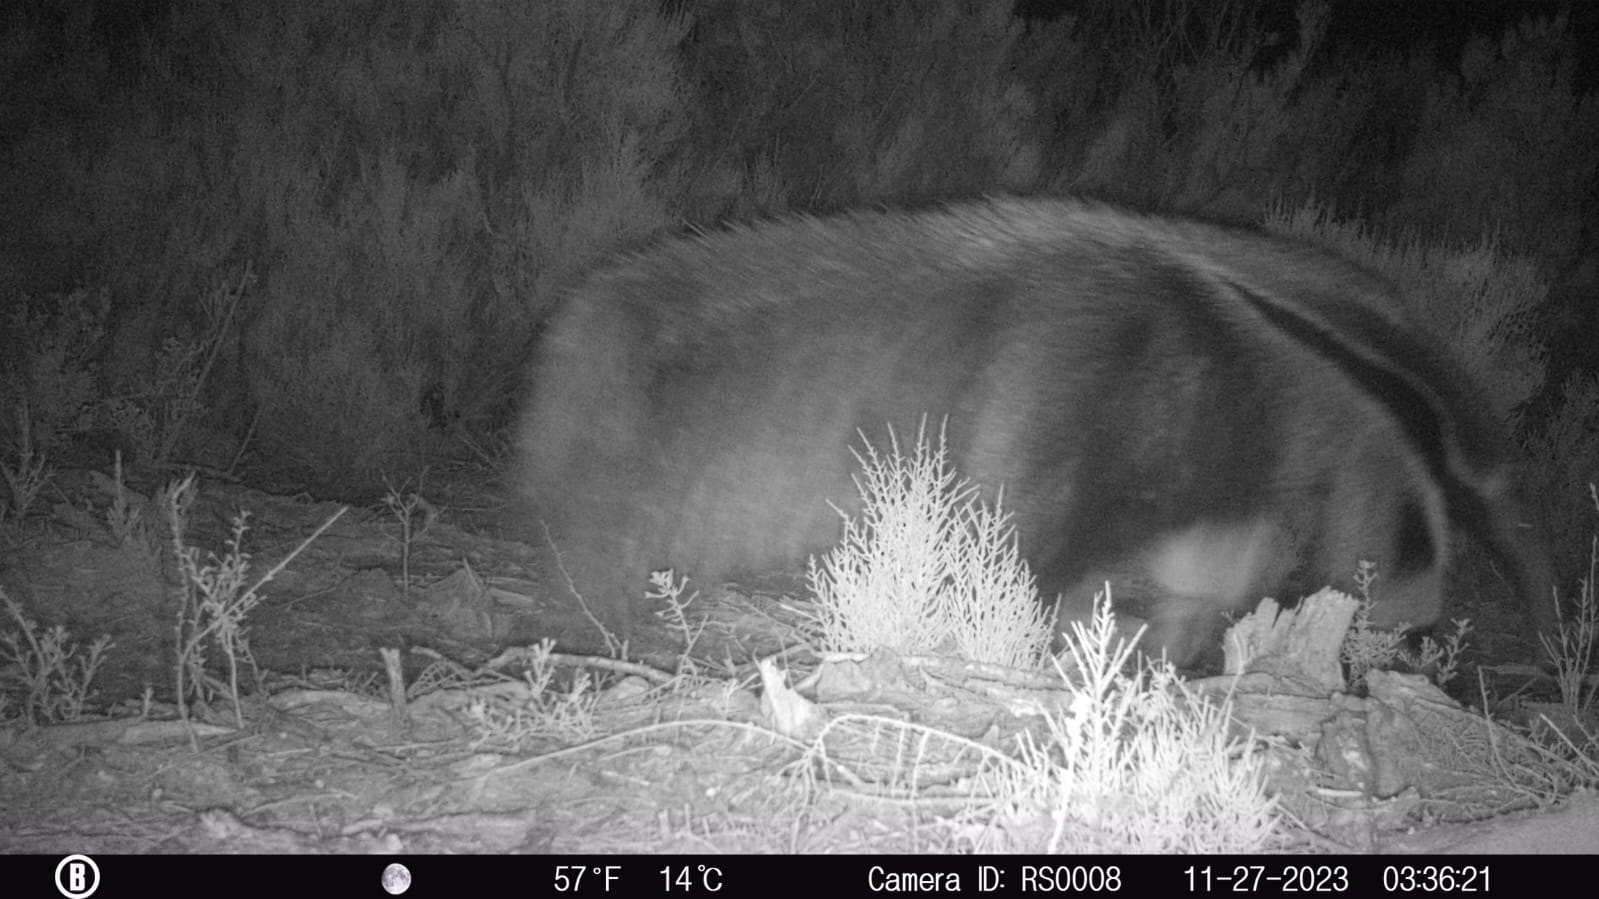 Registraron por primera vez un oso hormiguero en el Parque Nacional Ansenuza